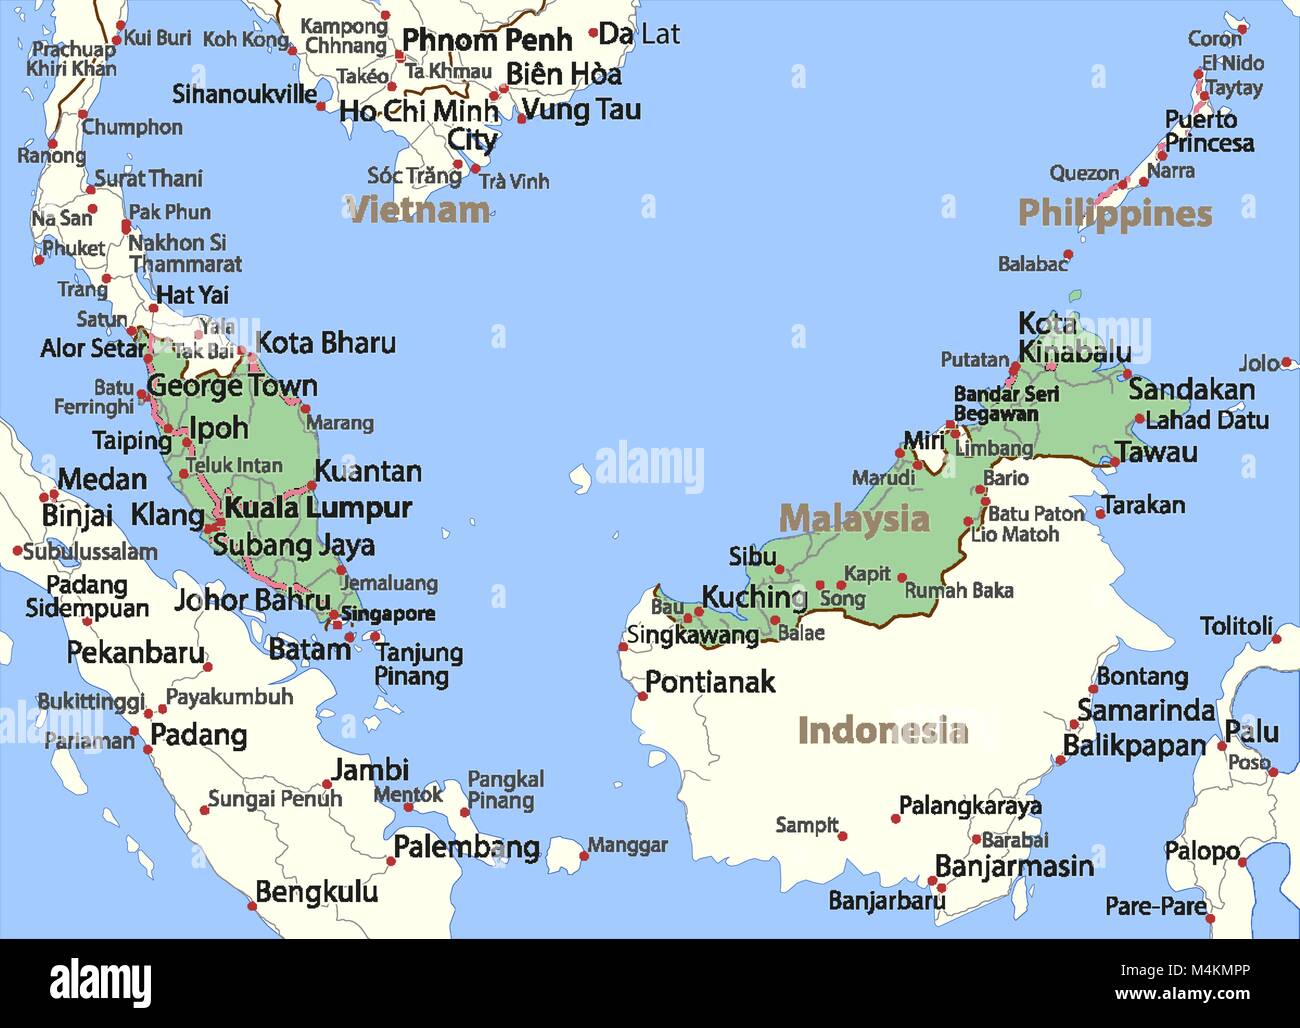 Karte von Malaysia. Zeigt die Ländergrenzen, Ortsnamen und Straßen. Beschriftungen in Englisch, wo dies möglich ist. Projektion: Mercator. Stock Vektor